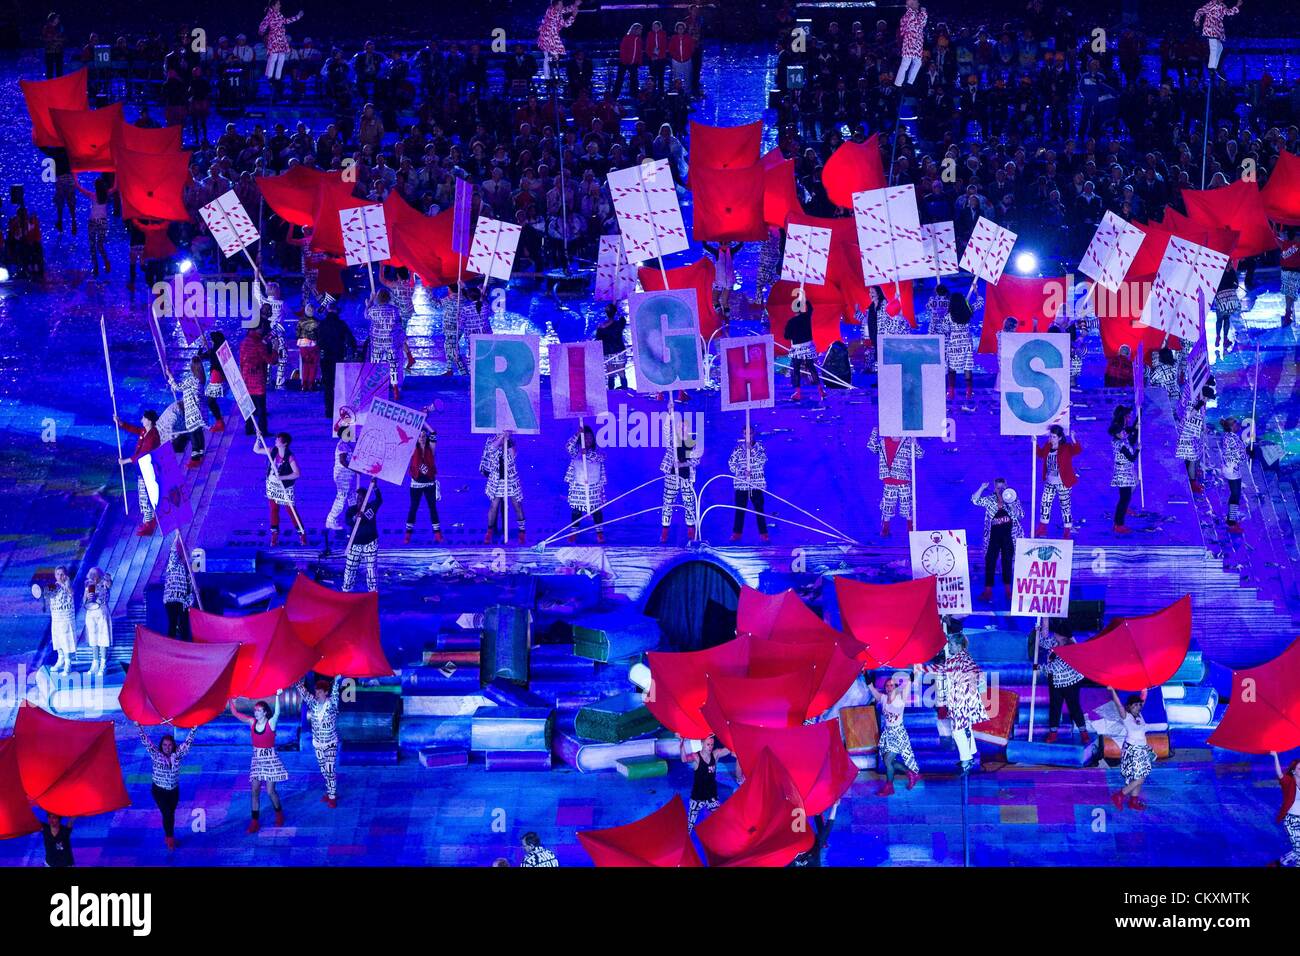 Stratford, London, UK. 29 août 2012. La cérémonie d'ouverture des Jeux Paralympiques de 2012 à Londres au Stade olympique de Stratford. Credit : Action Plus de Sports / Alamy Live News Banque D'Images